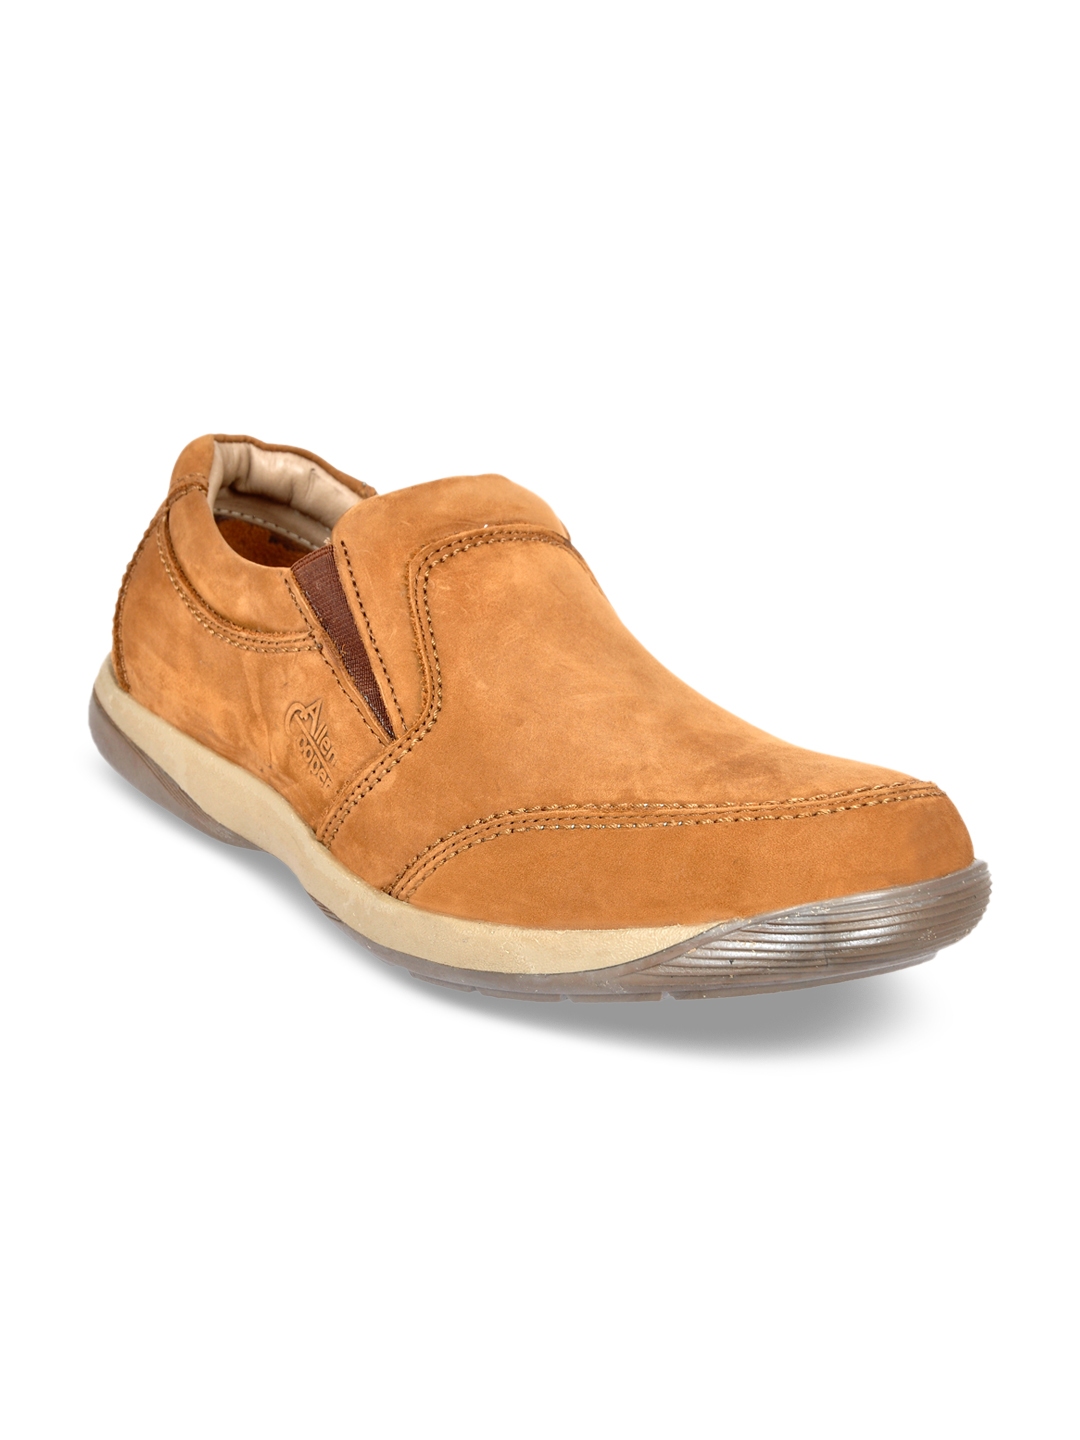 Buy Allen Cooper Men Tan Textured Leather Mid Top Trekking Shoes ...